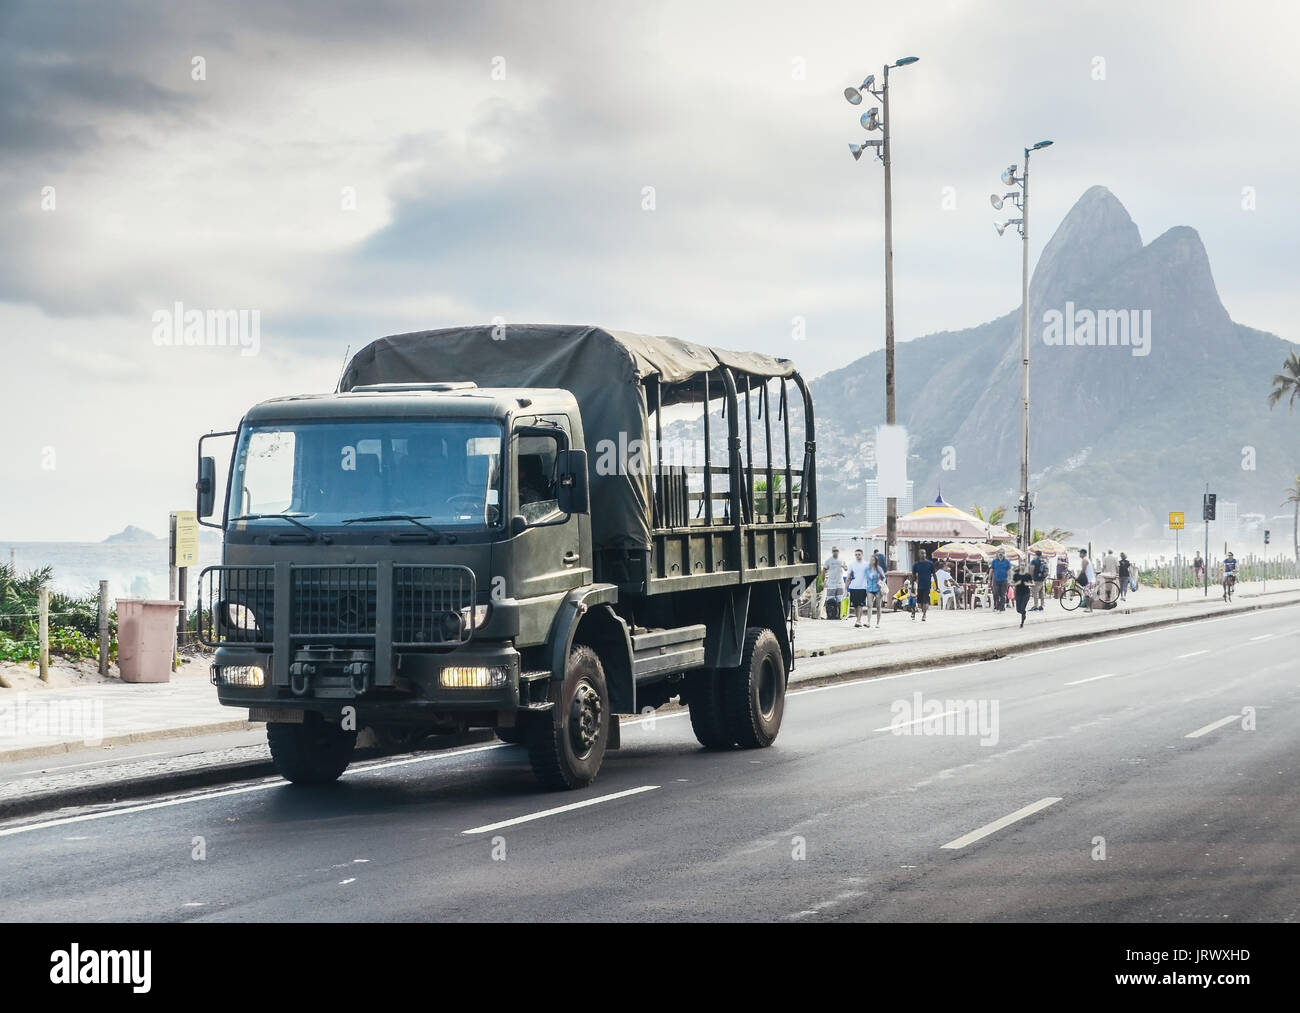 Army truck per le strade di Rio de Janeiro in Brasile per evitare una escalation di violenza Foto Stock